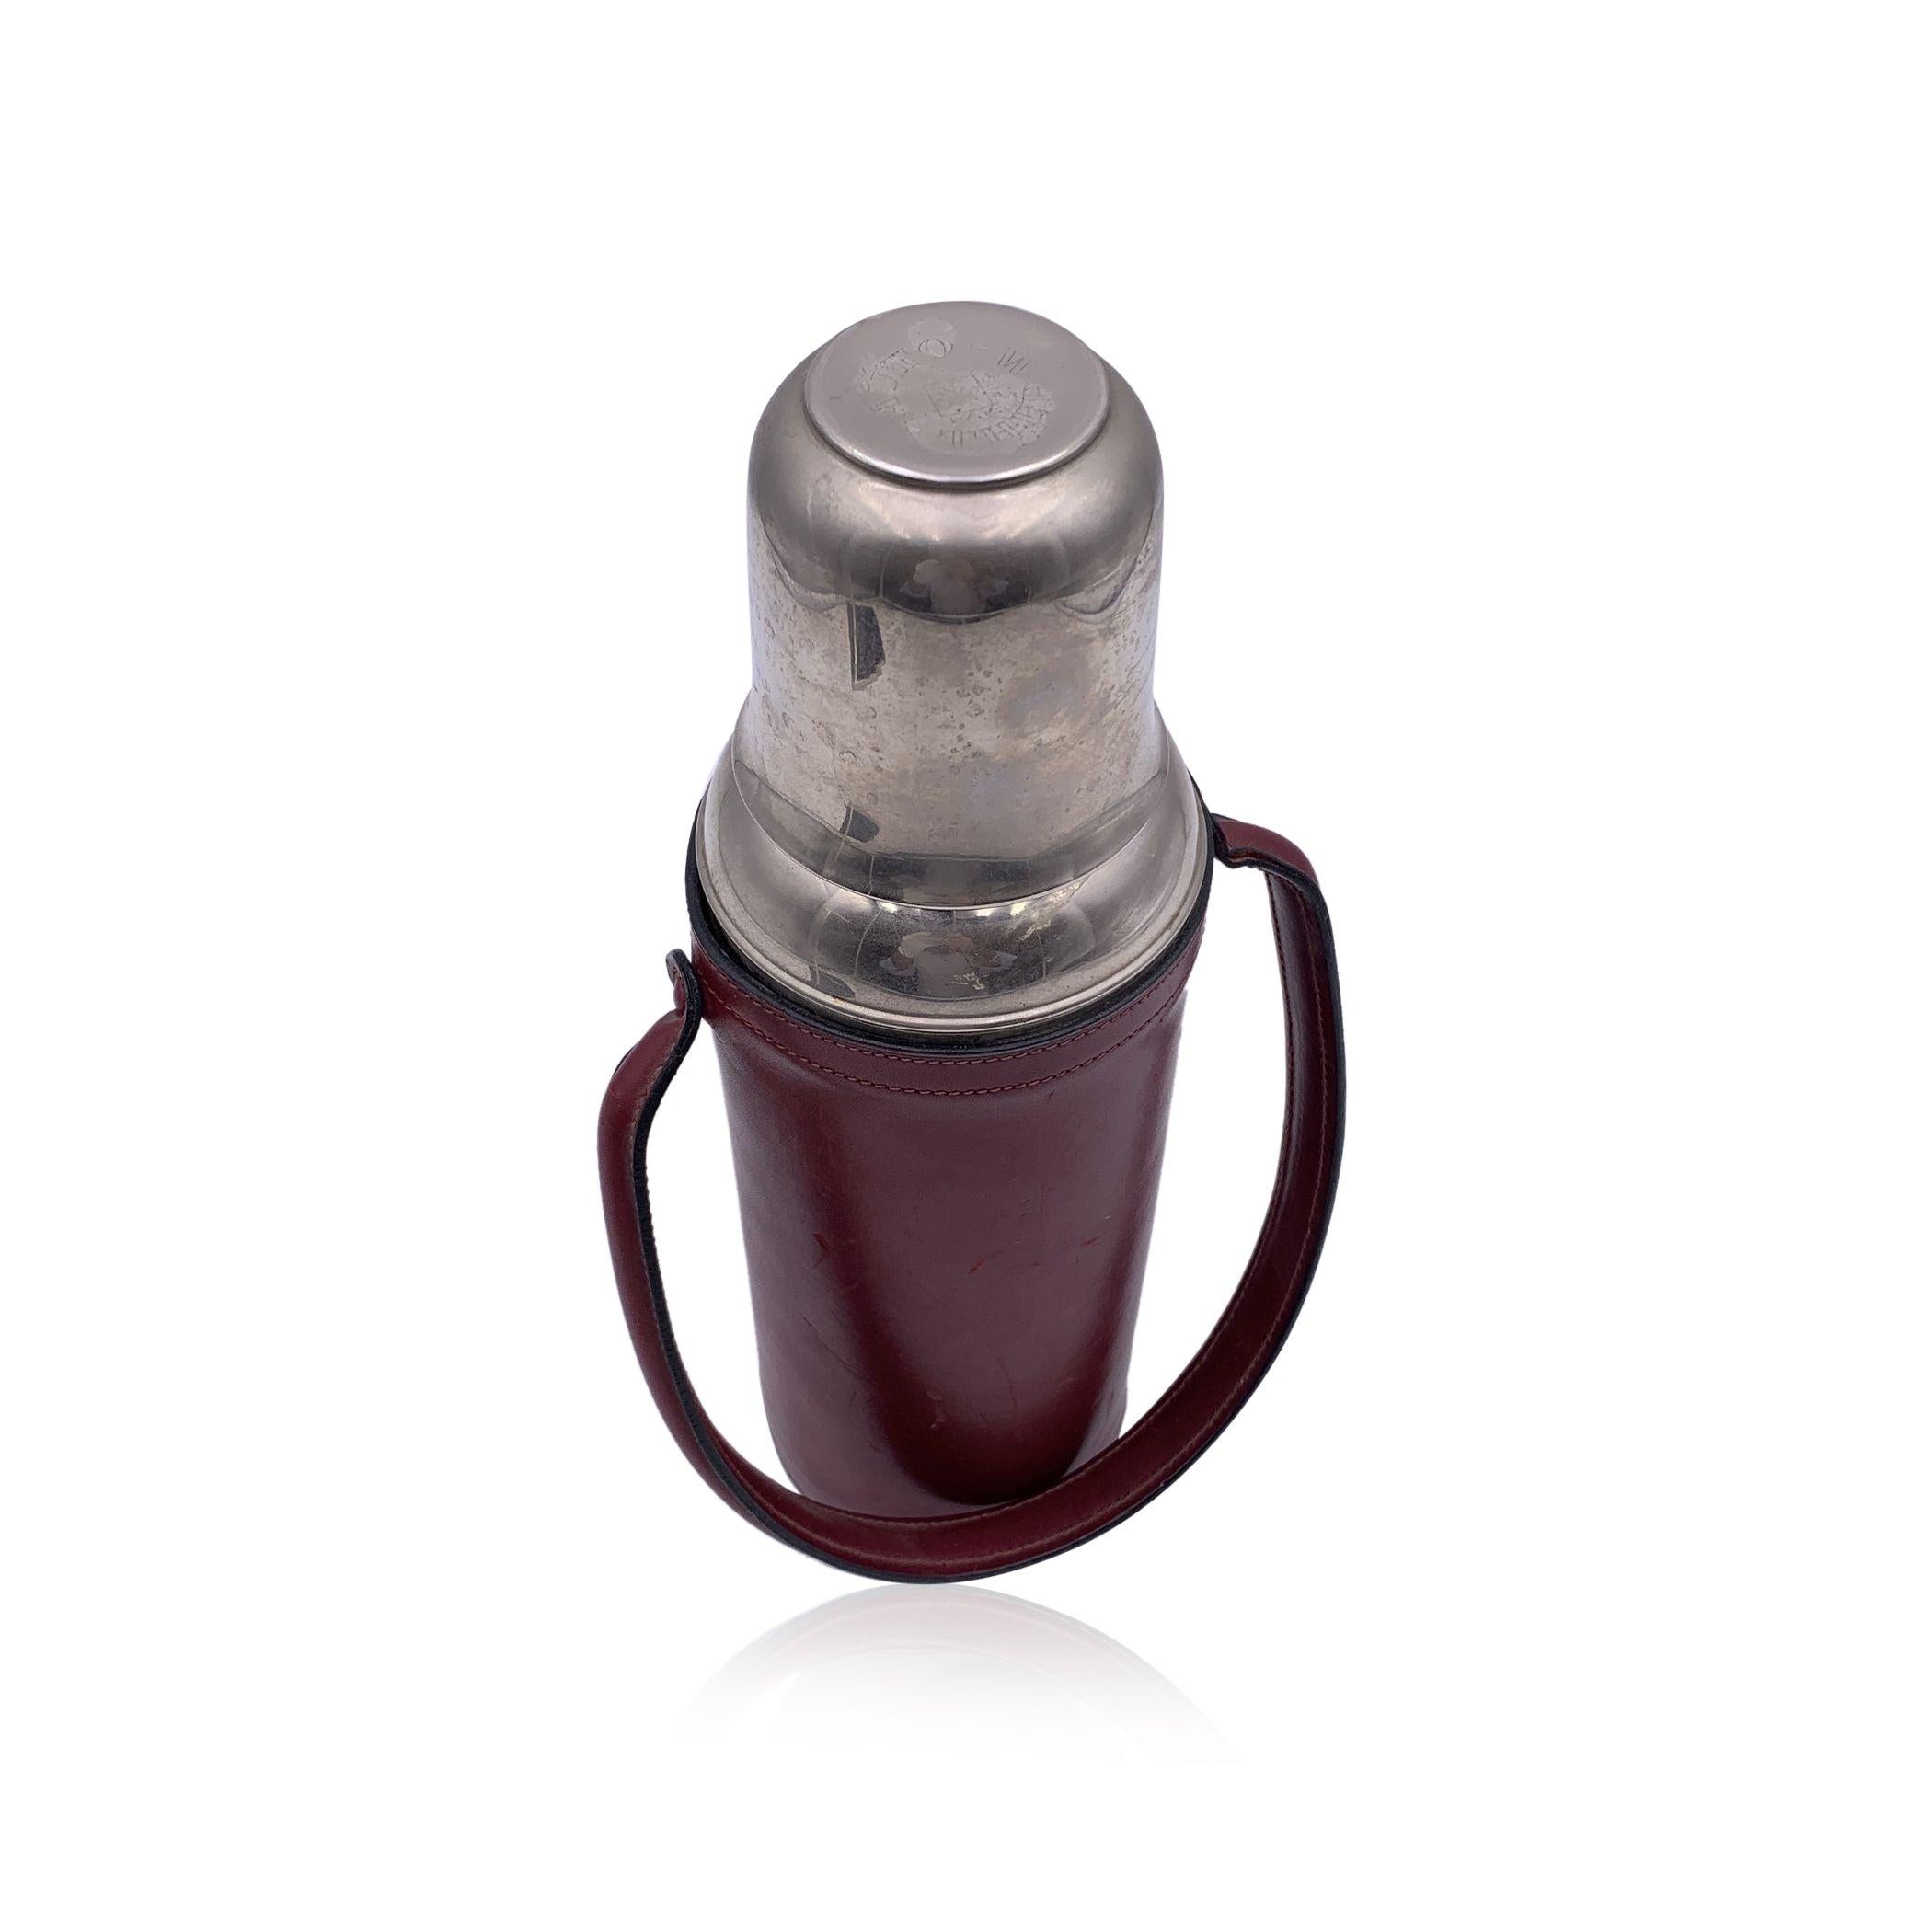 Vintage Vakuumflasche/Thermos aus Edelstahl von FRANZI mit Metalldeckel. Der Deckel kann abgeschraubt werden und ist ein süßer Becher. Sie wird mit einer Verschlussschraube verschlossen. Burgunderfarbener Ledereinband mit Griff. Höhe: 11,75 Zoll -